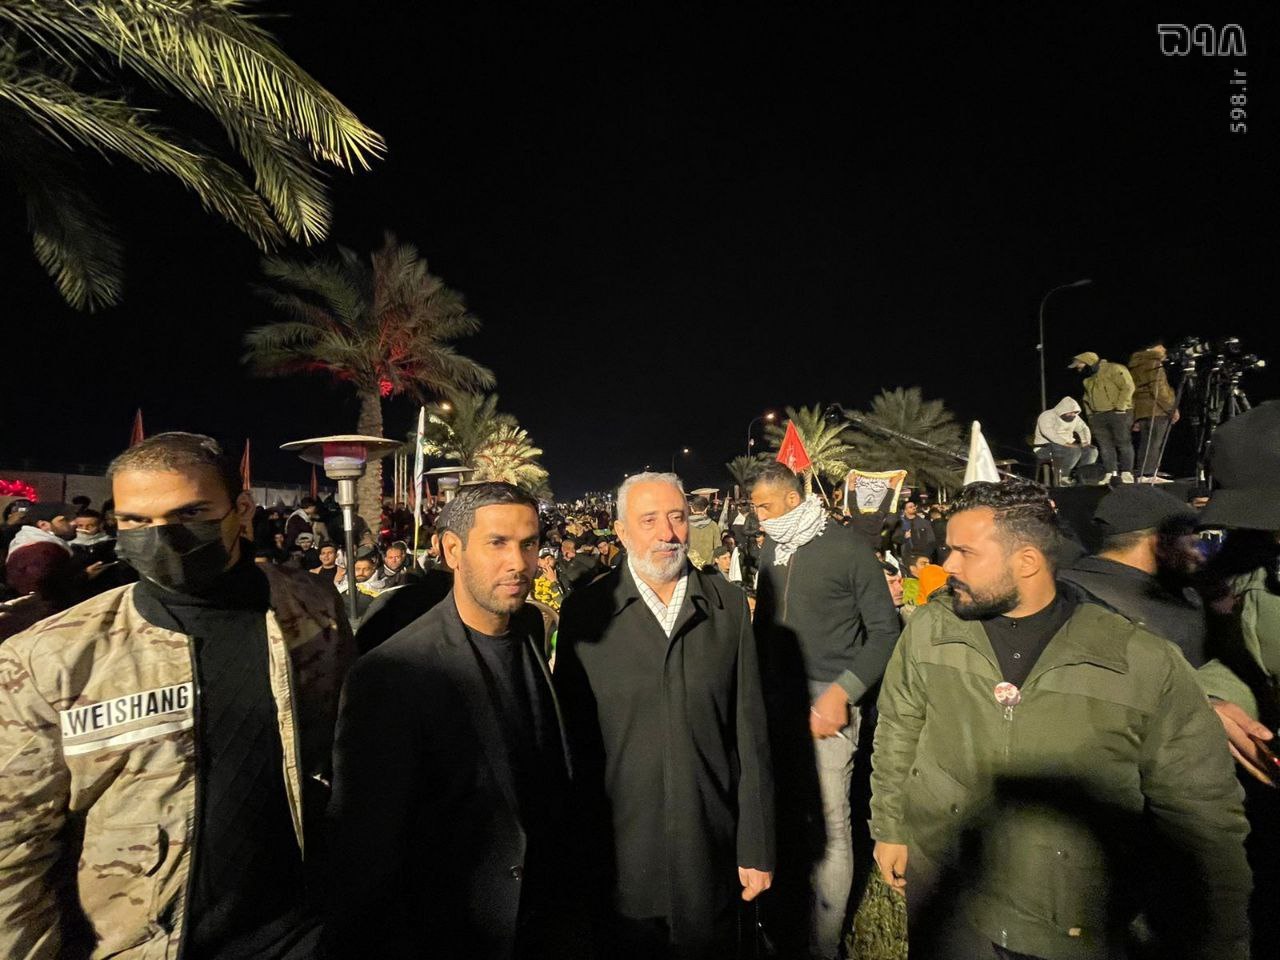 گزارش تصویری از مراسم دومین سالگرد شهادت حاج قاسم سلیمانی و شهید ابومهدی در محل فرودگاه بغداد+ فیلم و عکس